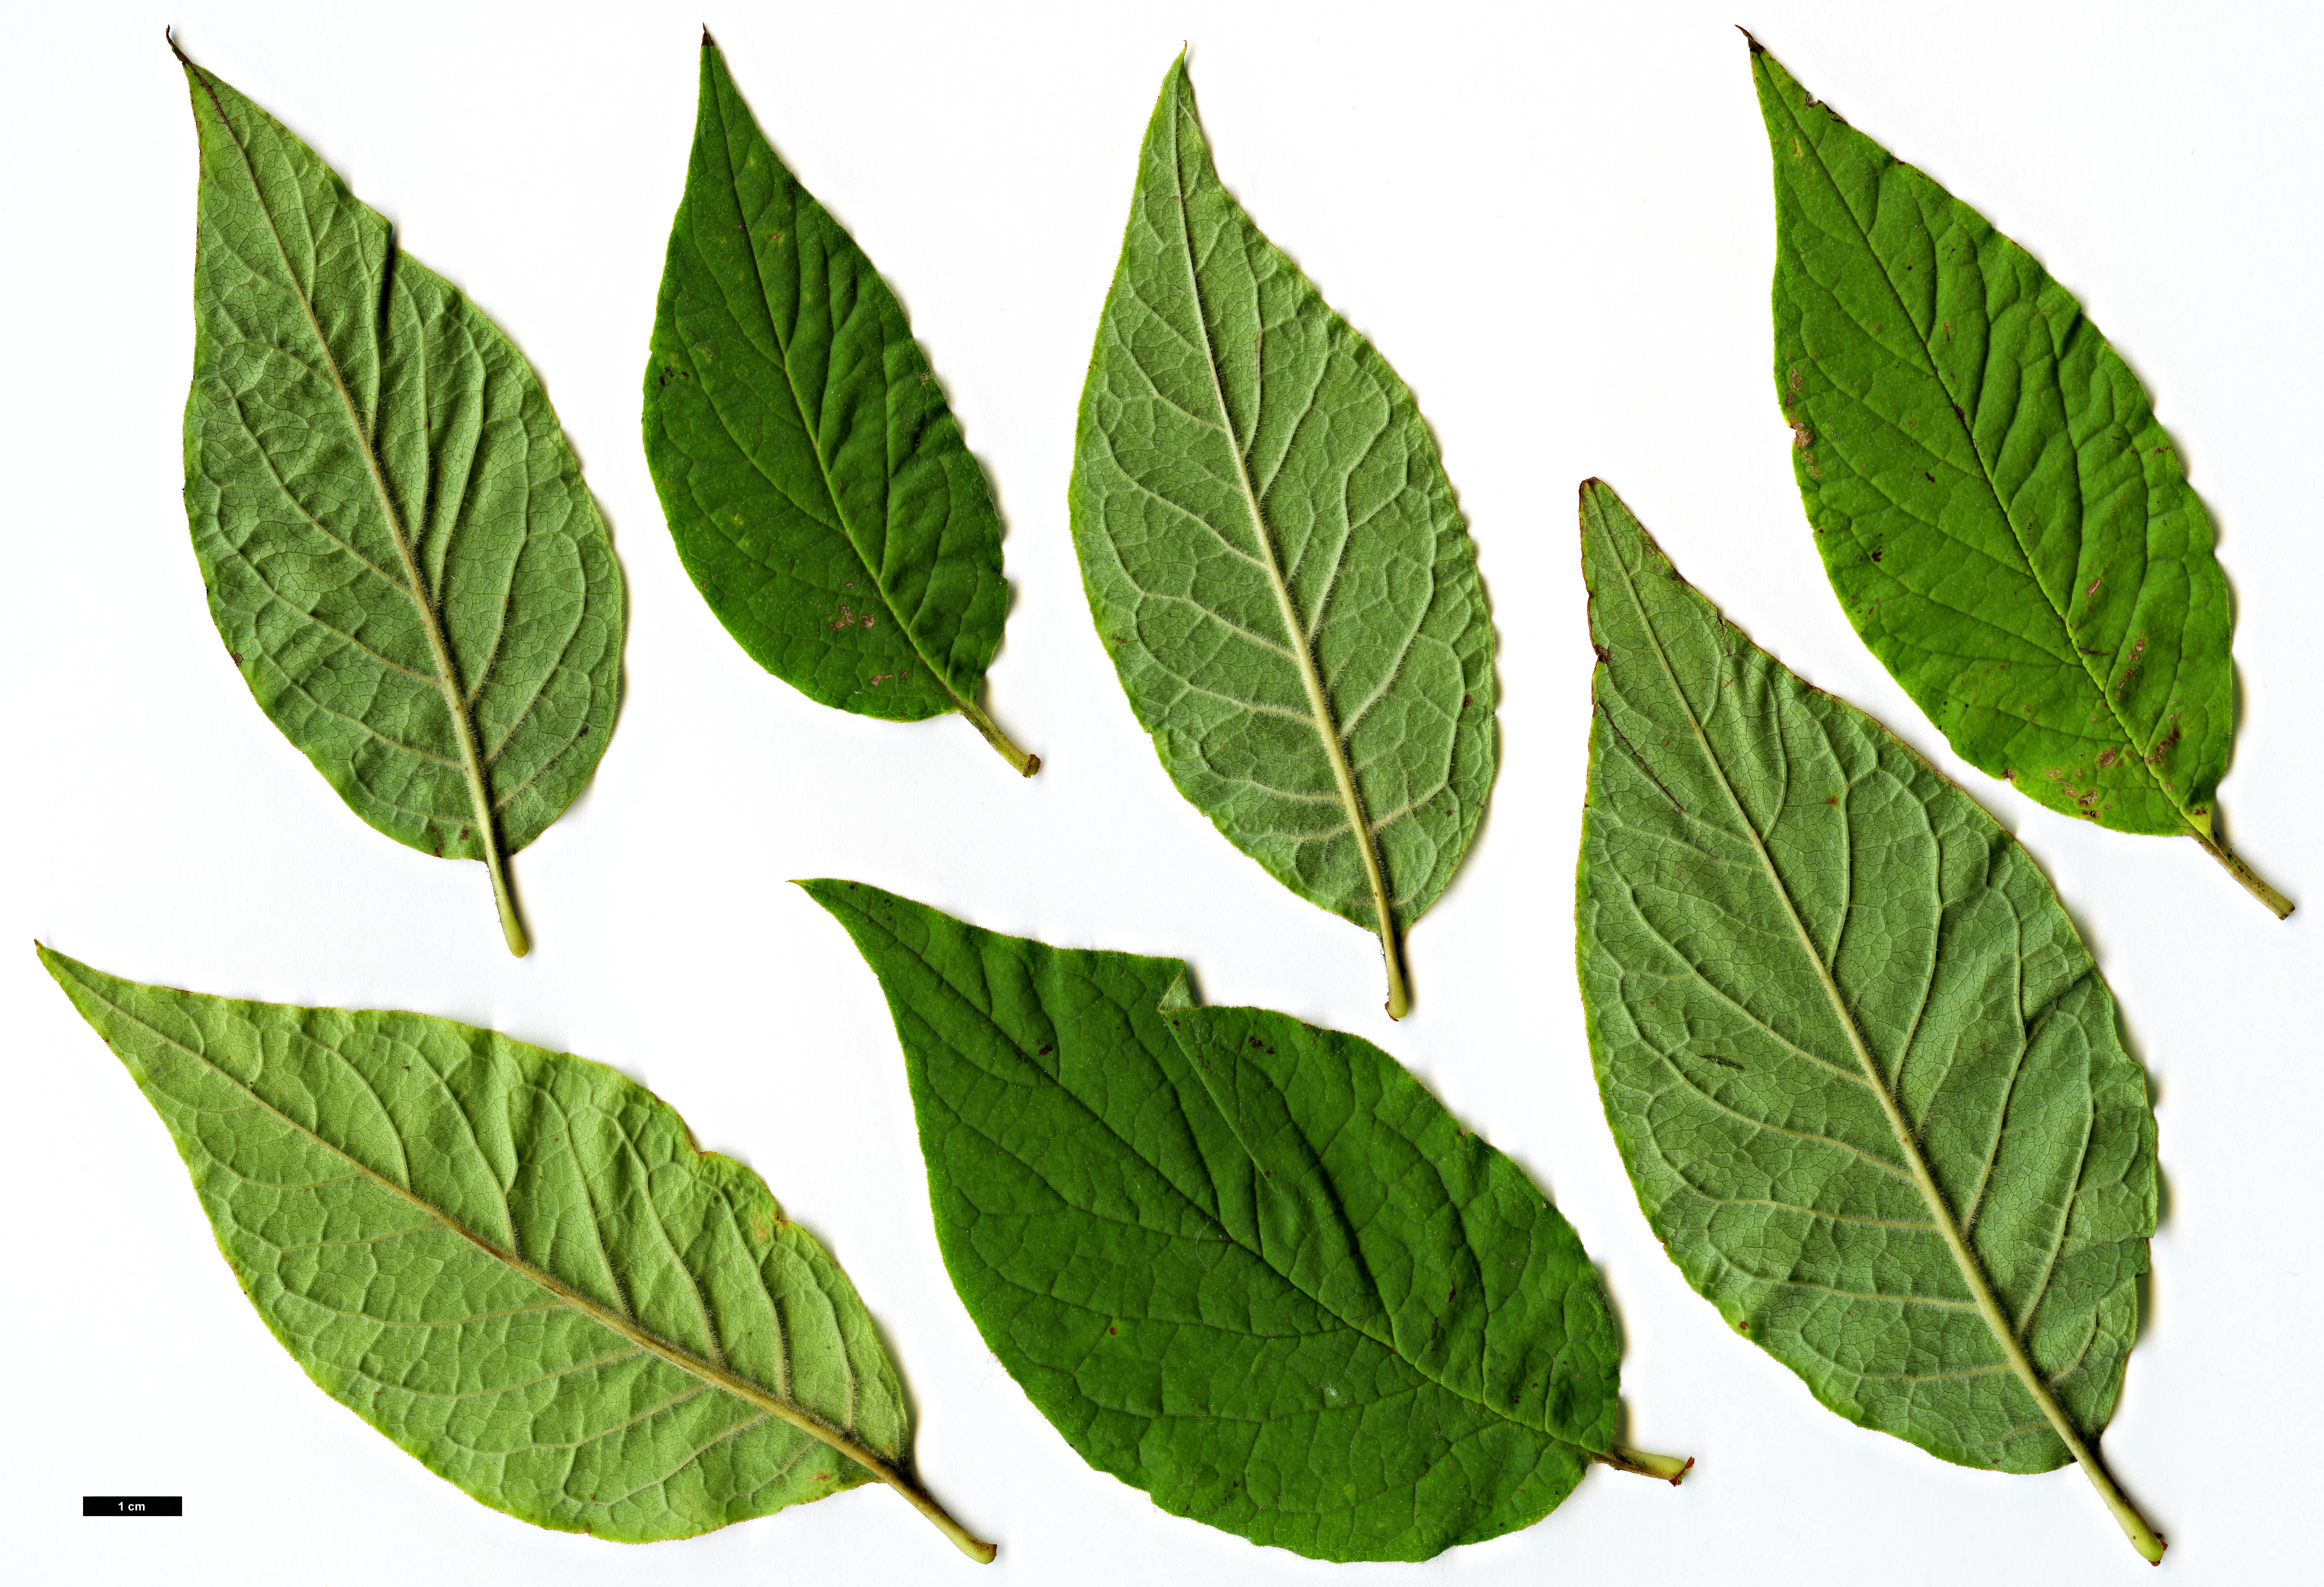 High resolution image: Family: Oleaceae - Genus: Syringa - Taxon: ×henryi - SpeciesSub: 'Alba' (S.josikaea × S.villosa)